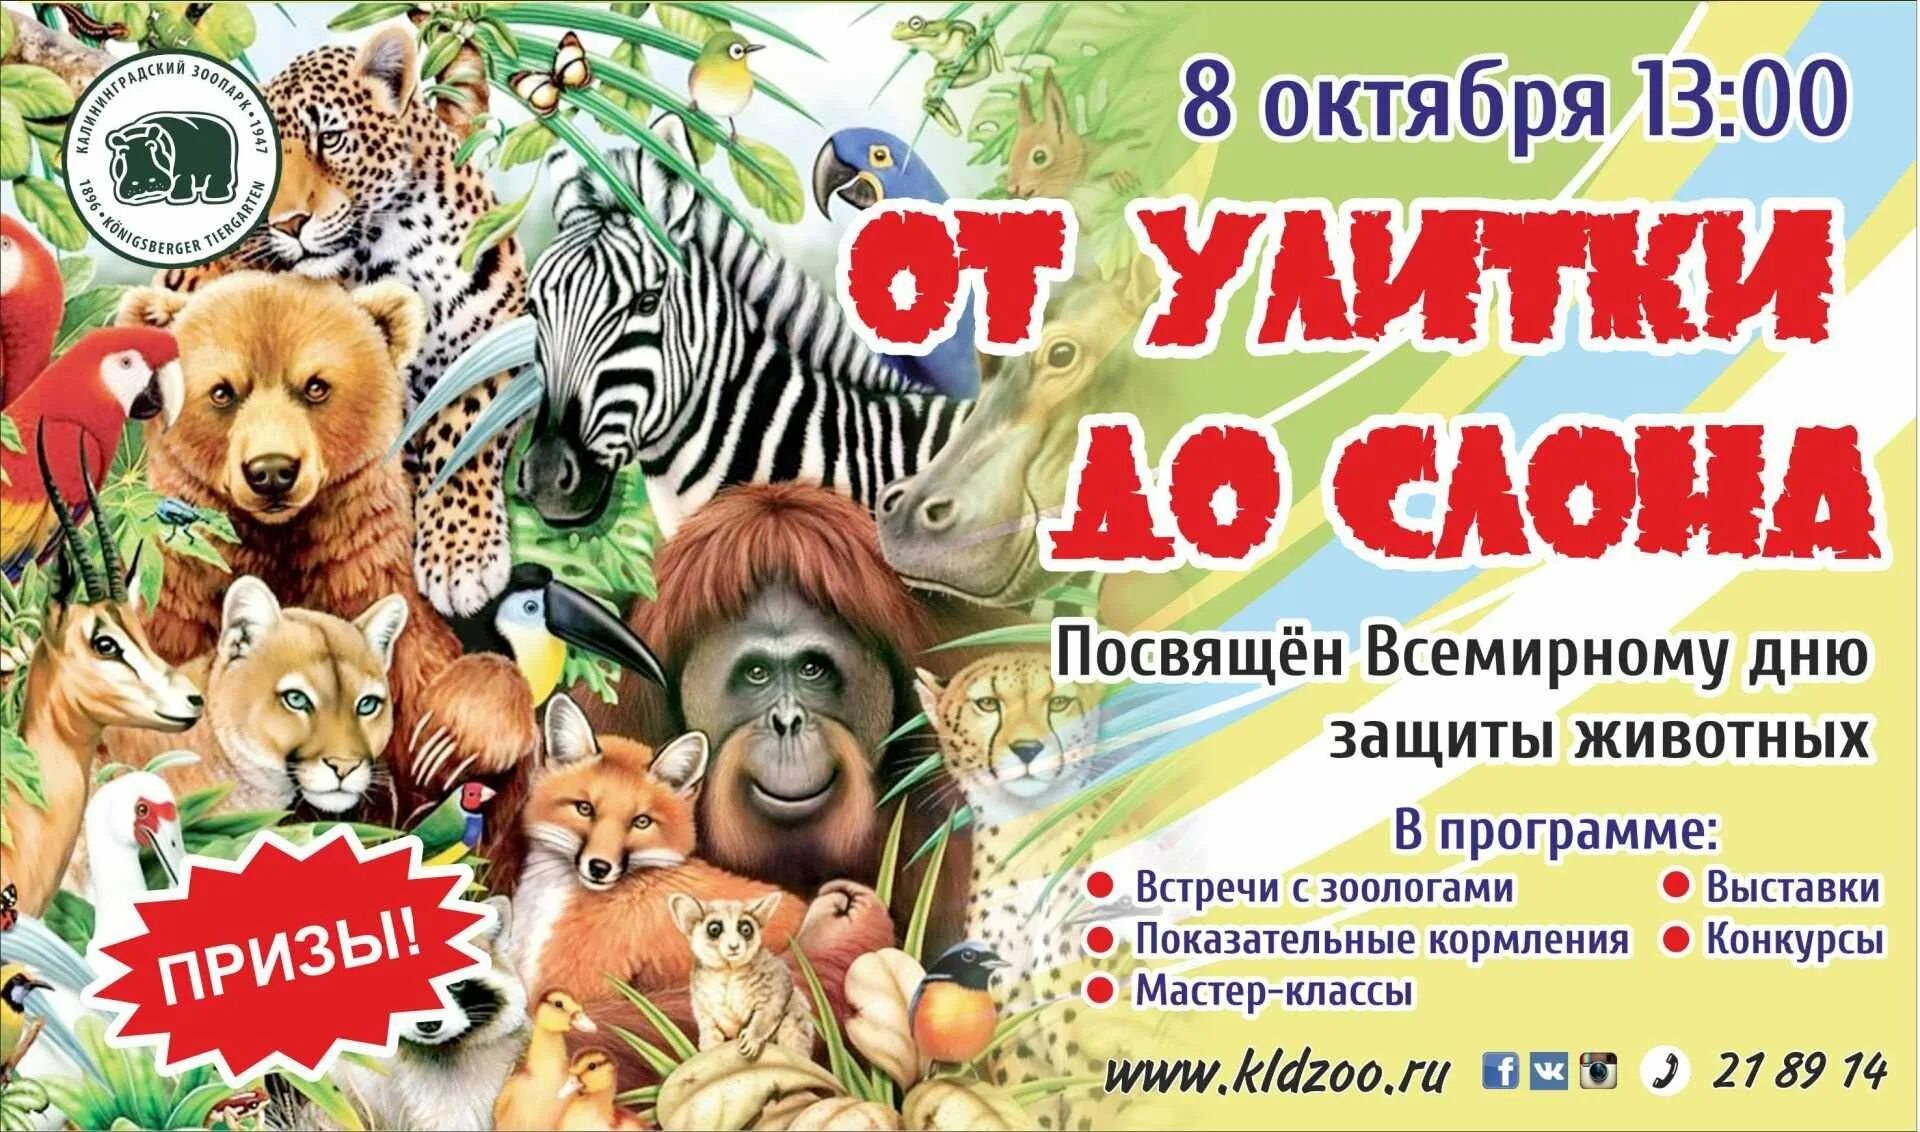 Всемирный день животных. Афиша зоопарка. Афиша зоопарка для детей. Приглашаем в зоопарк. День защиты животных афиша.